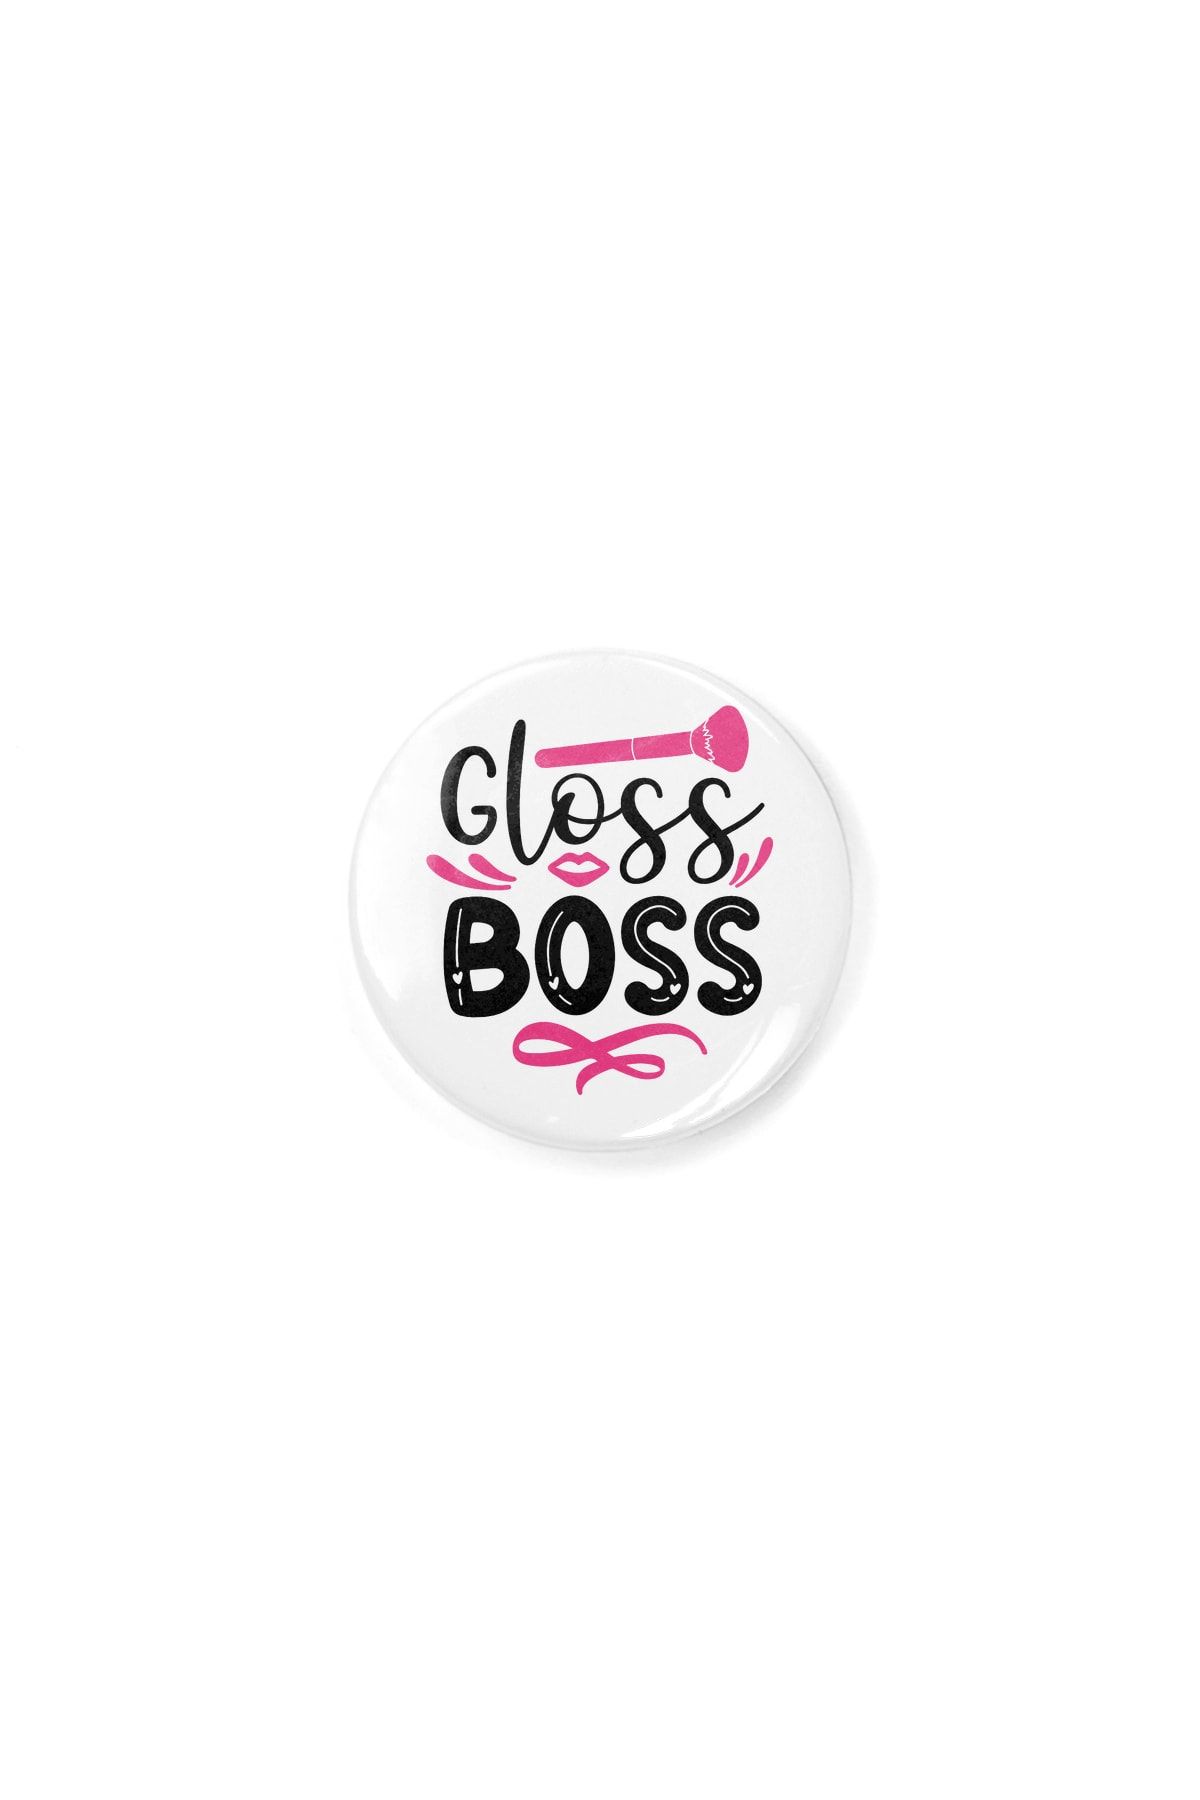 Fizello Gloss Boss Pink Girly Lip Gloss | Make Up Artist Şişe Açacağı